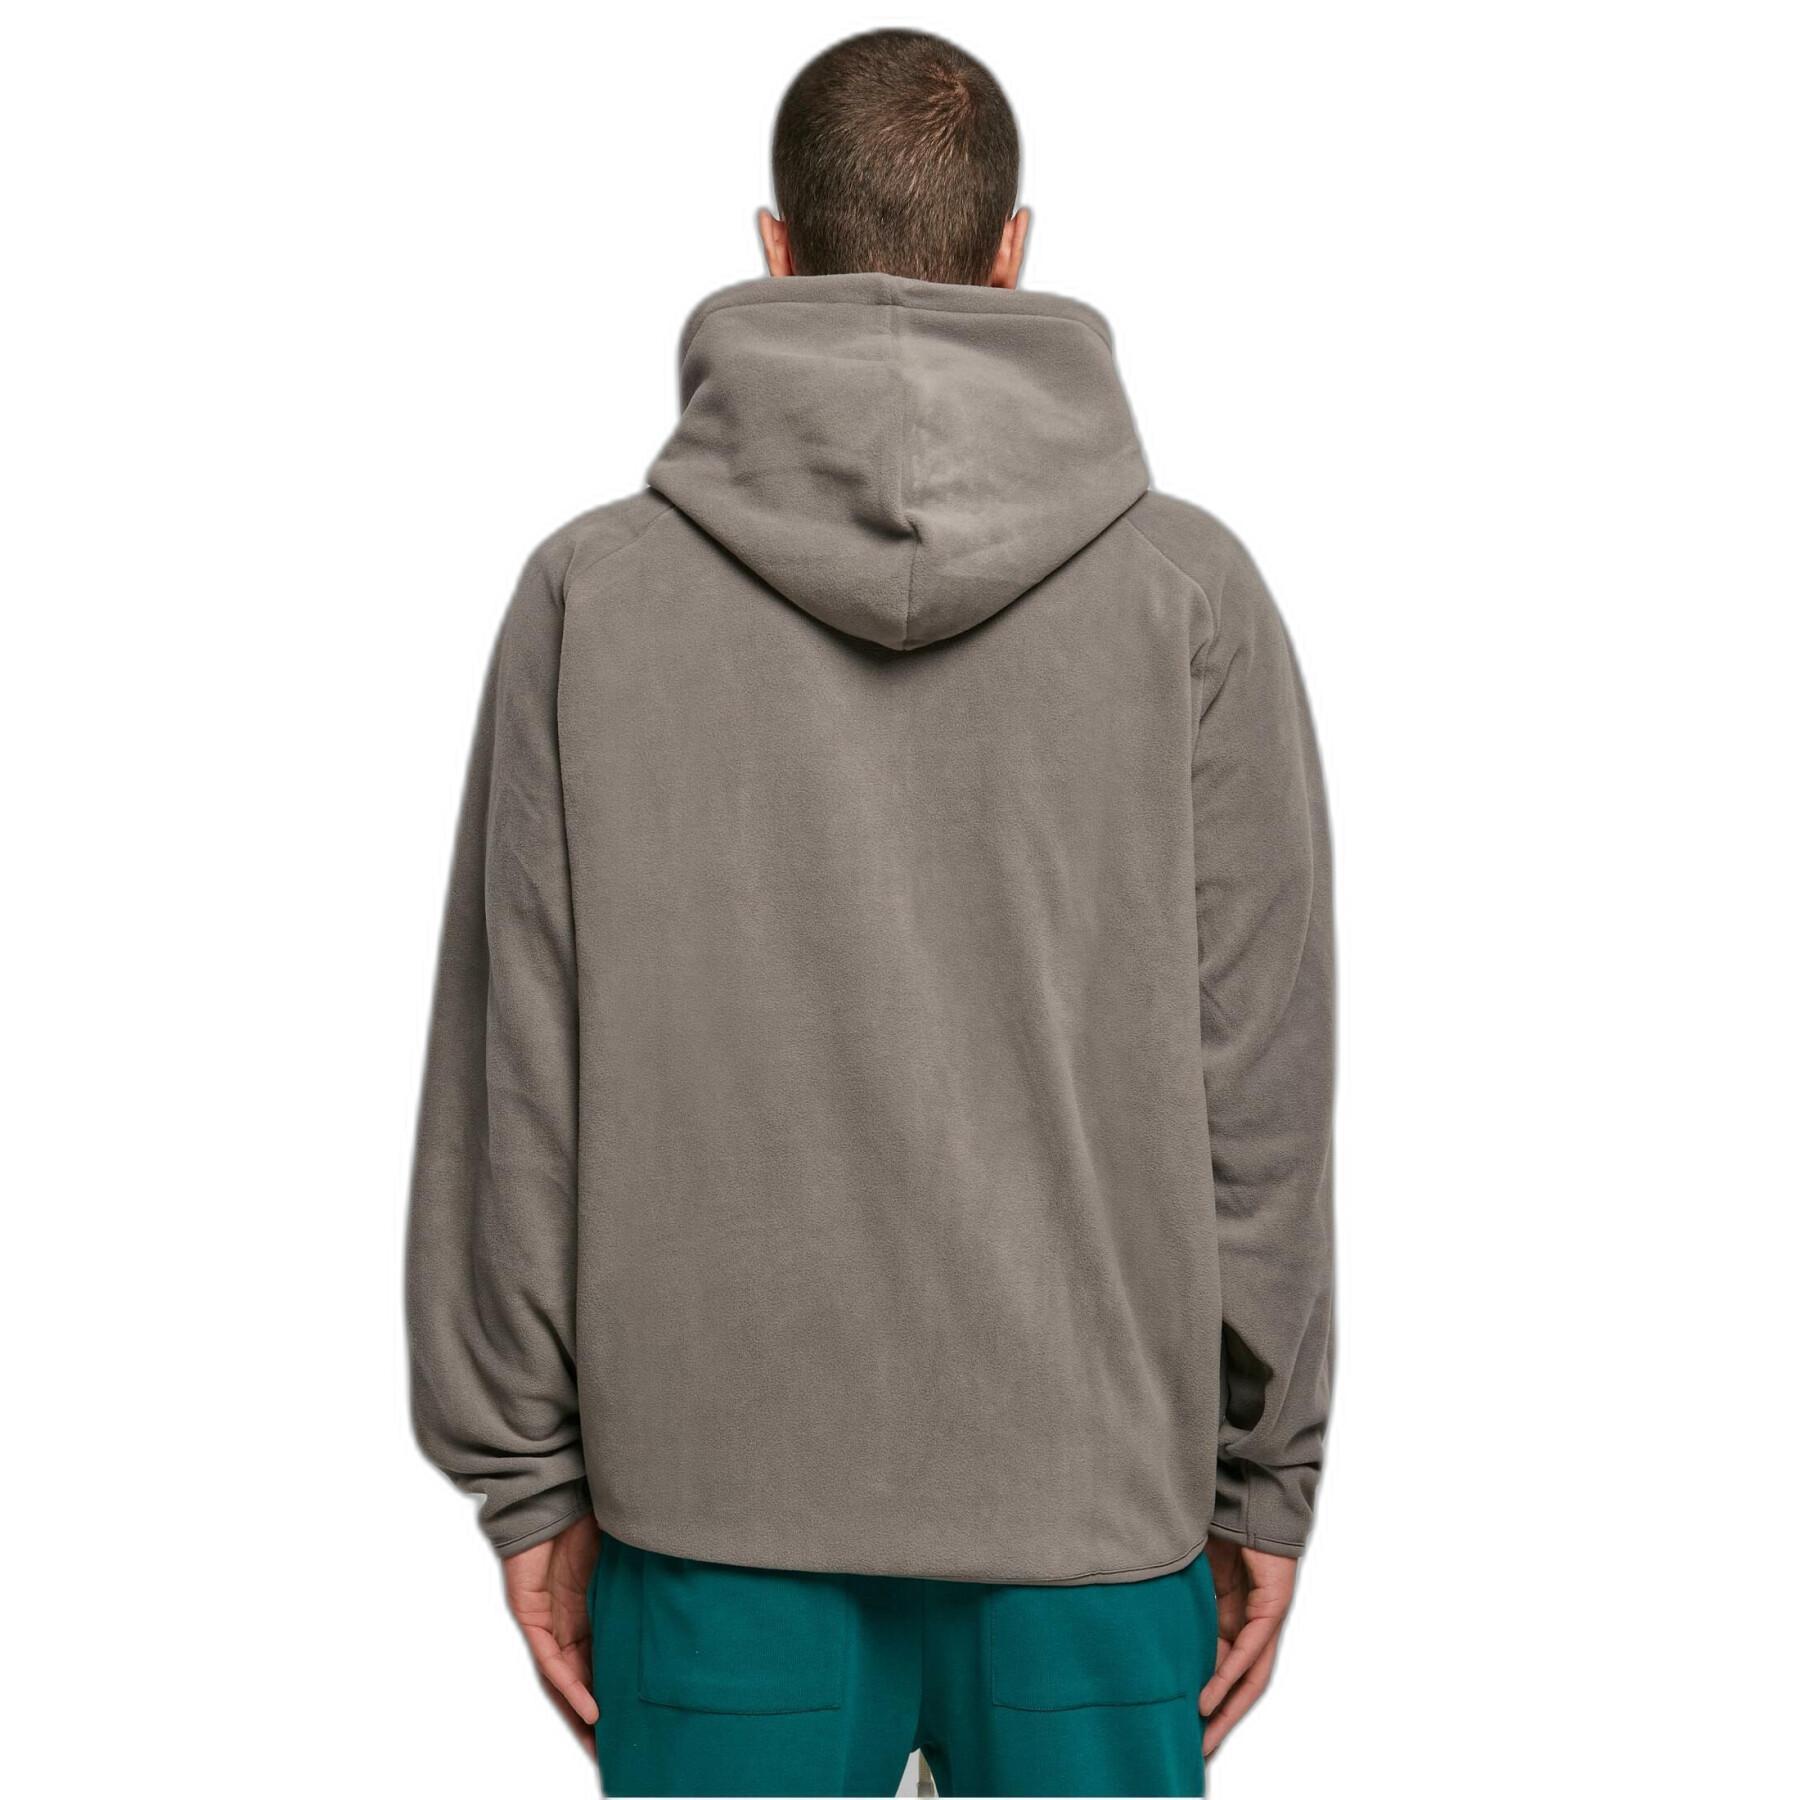 Zip-up hoodie Urban Classics Polar Fleece